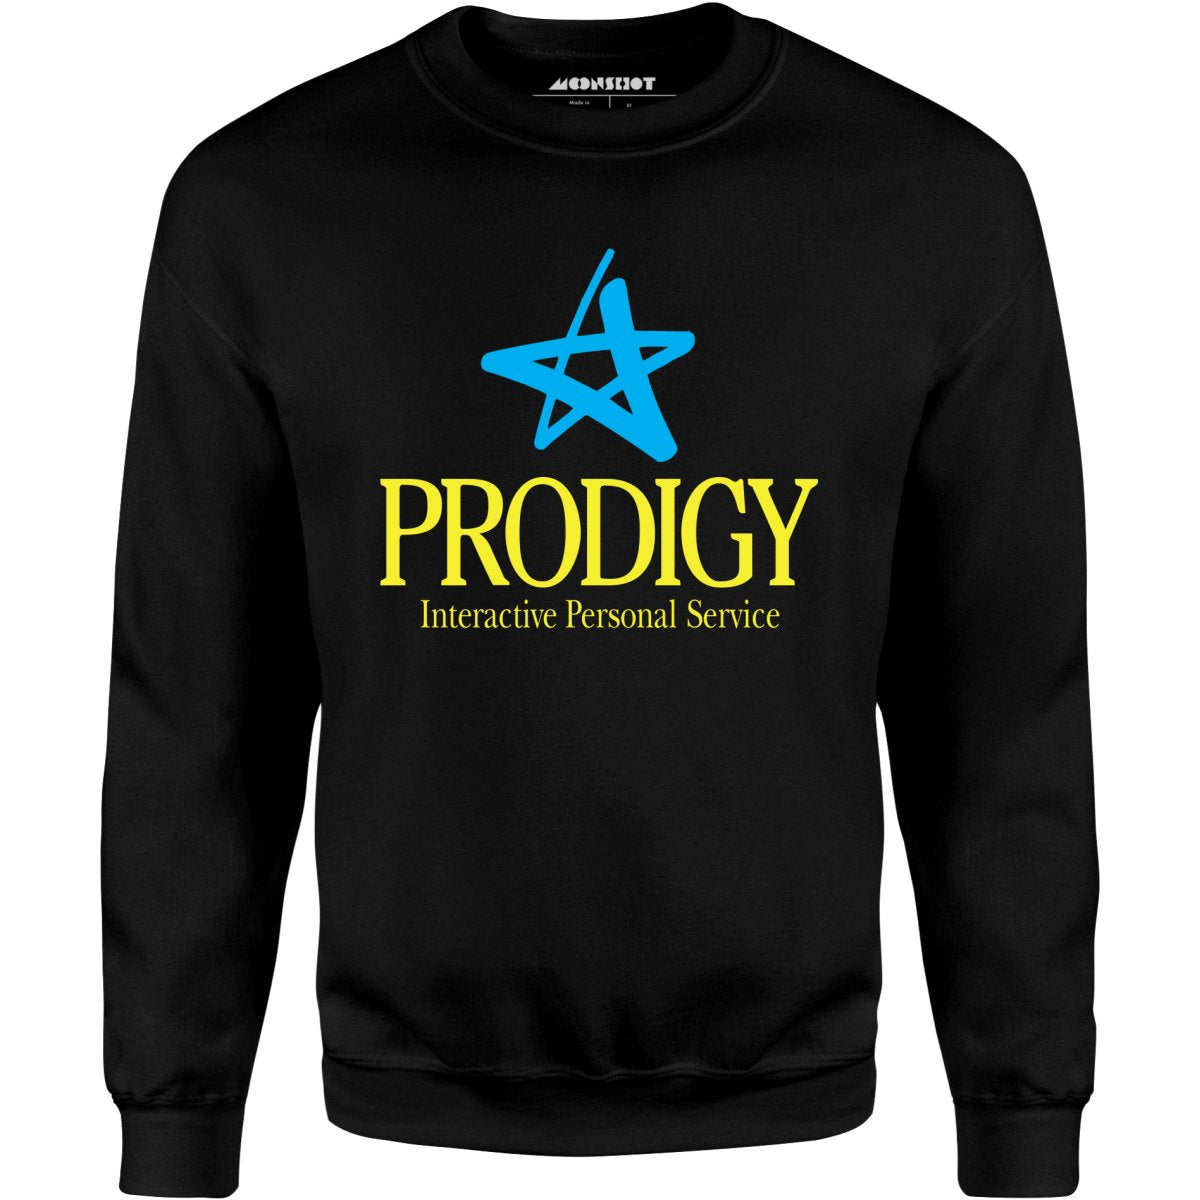 Prodigy - Vintage Internet - Unisex Sweatshirt